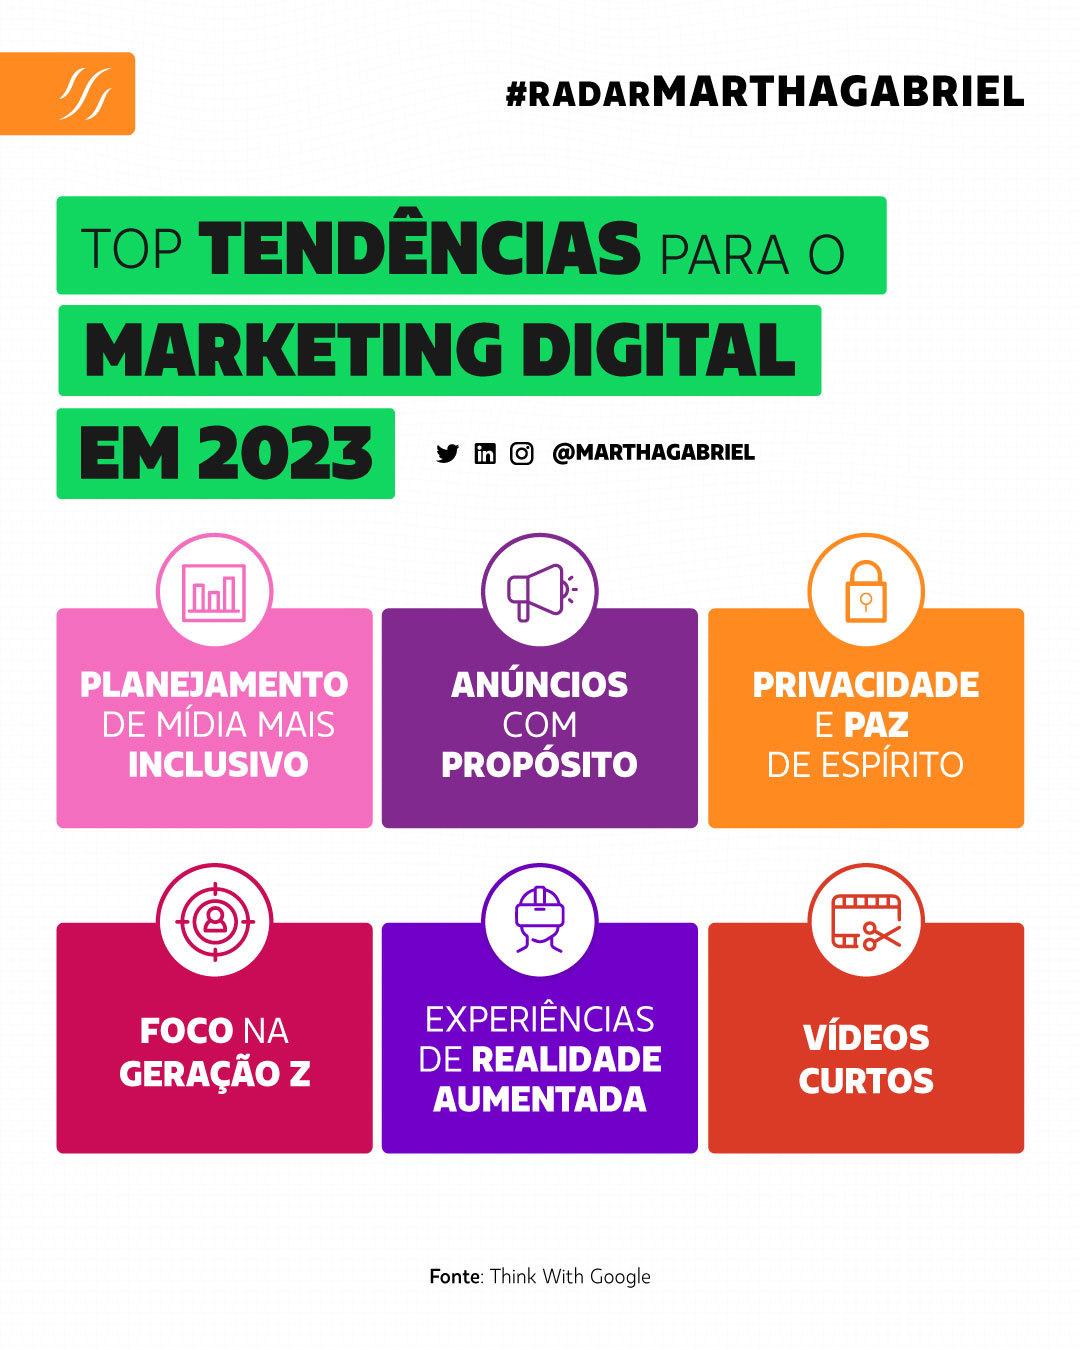 Top Tendências para o Marketing Digital em 2023